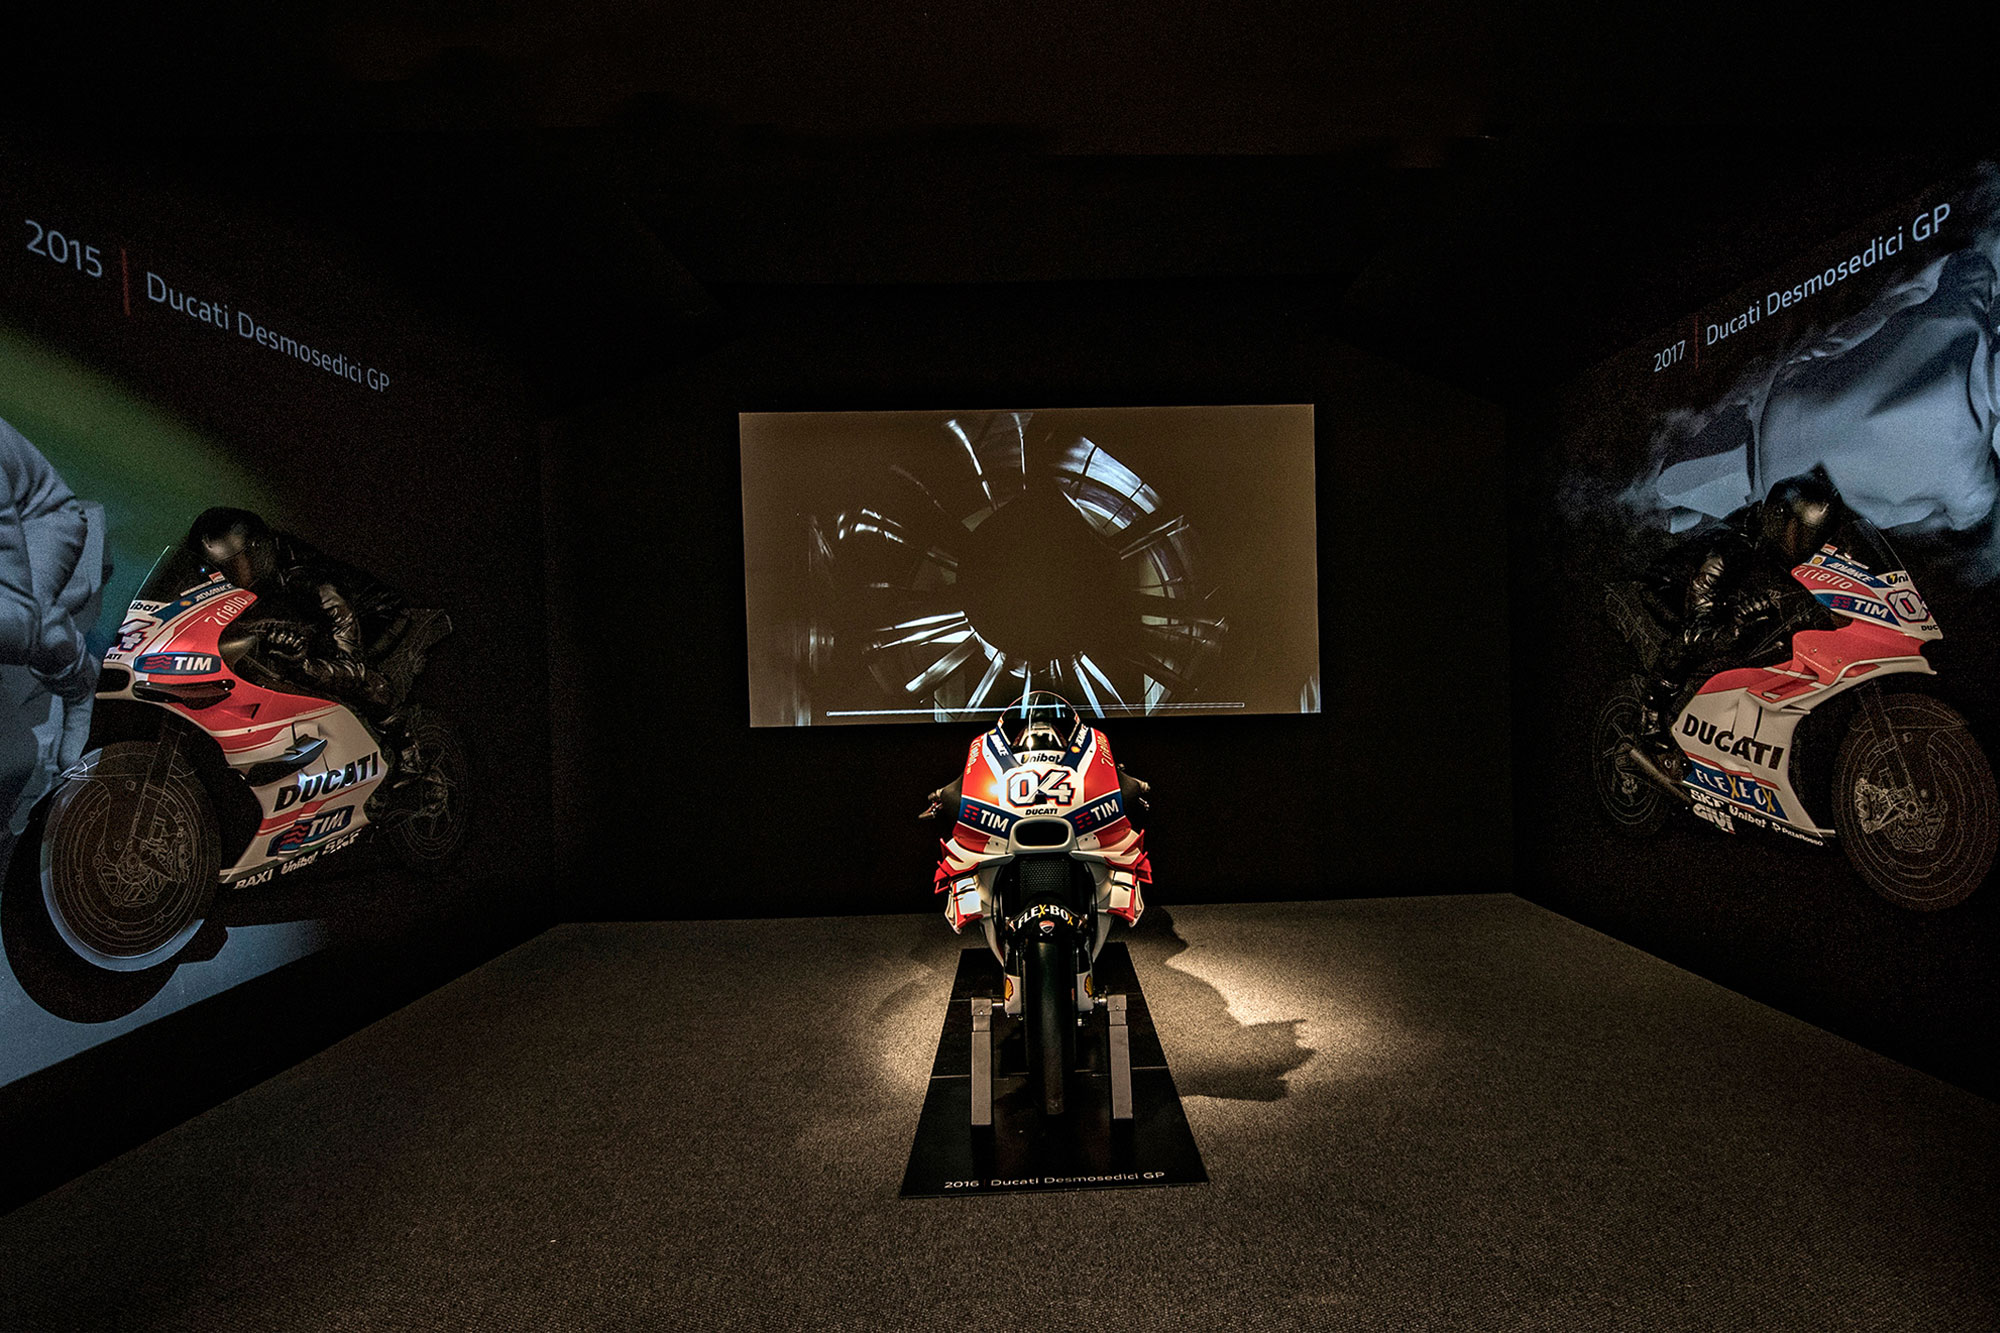 Ψηφιακή επίσκεψη στο μουσείο της Ducati